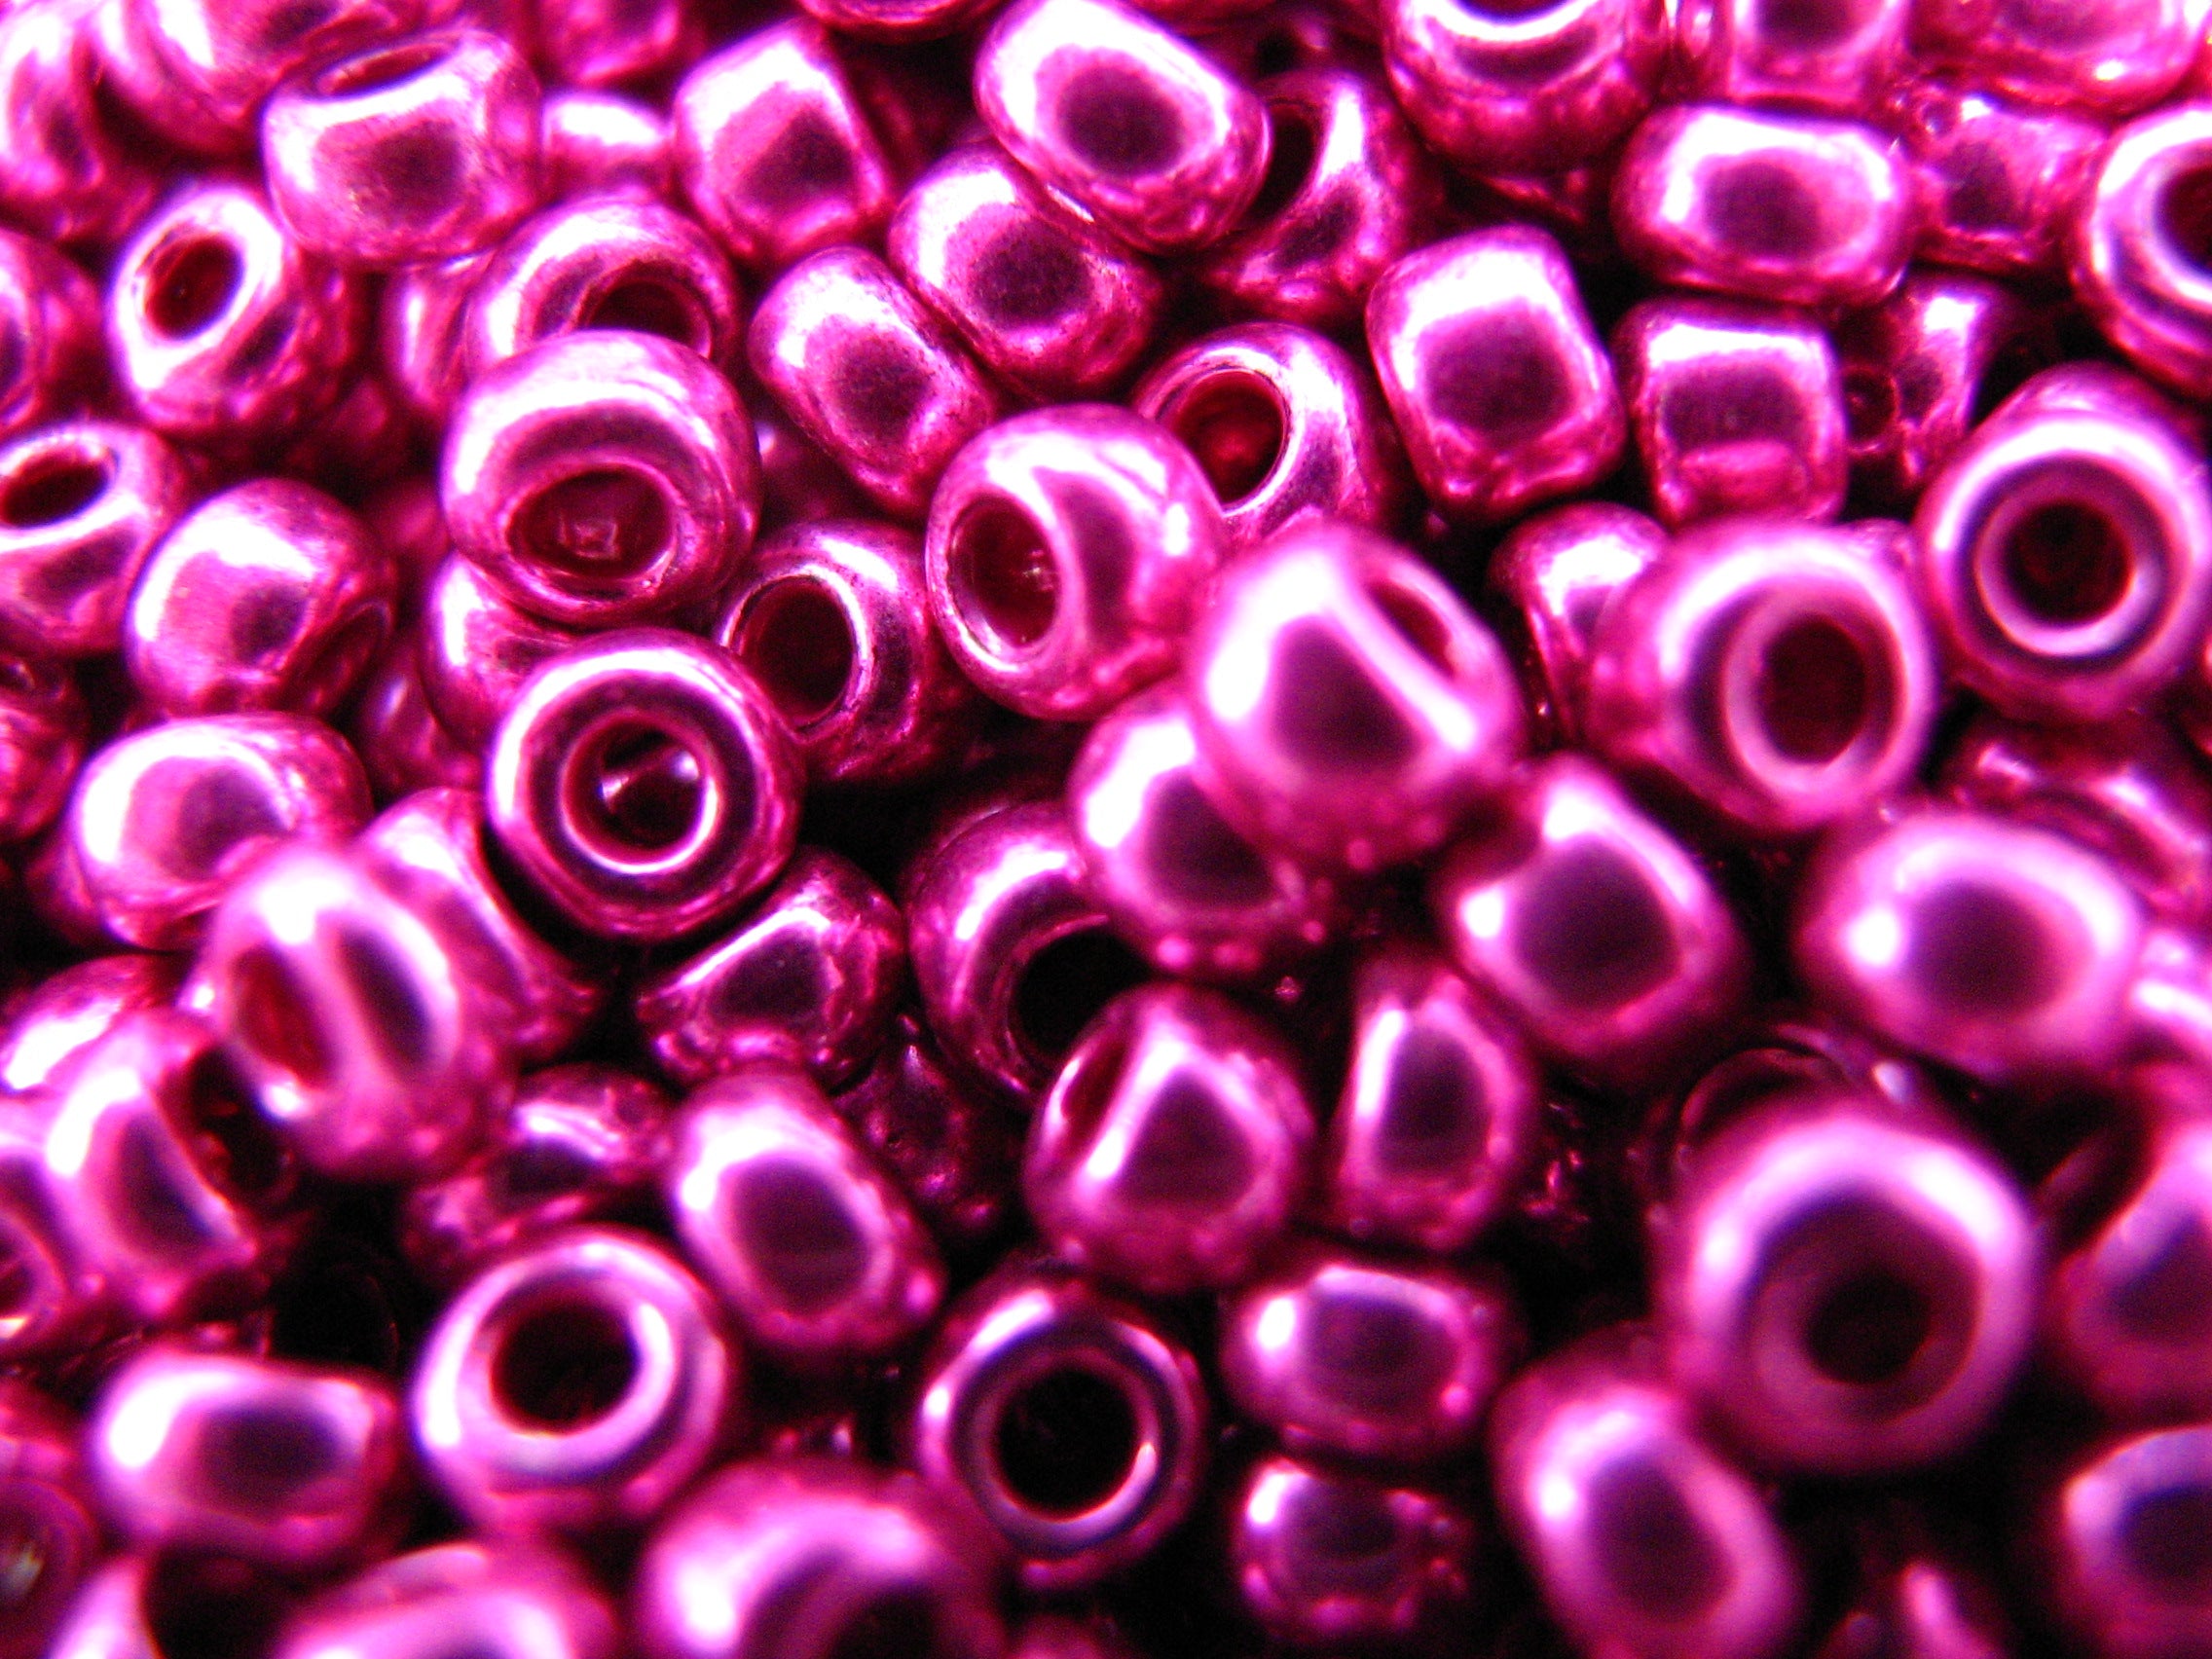 11/0 Toho seed beads 27 gms.